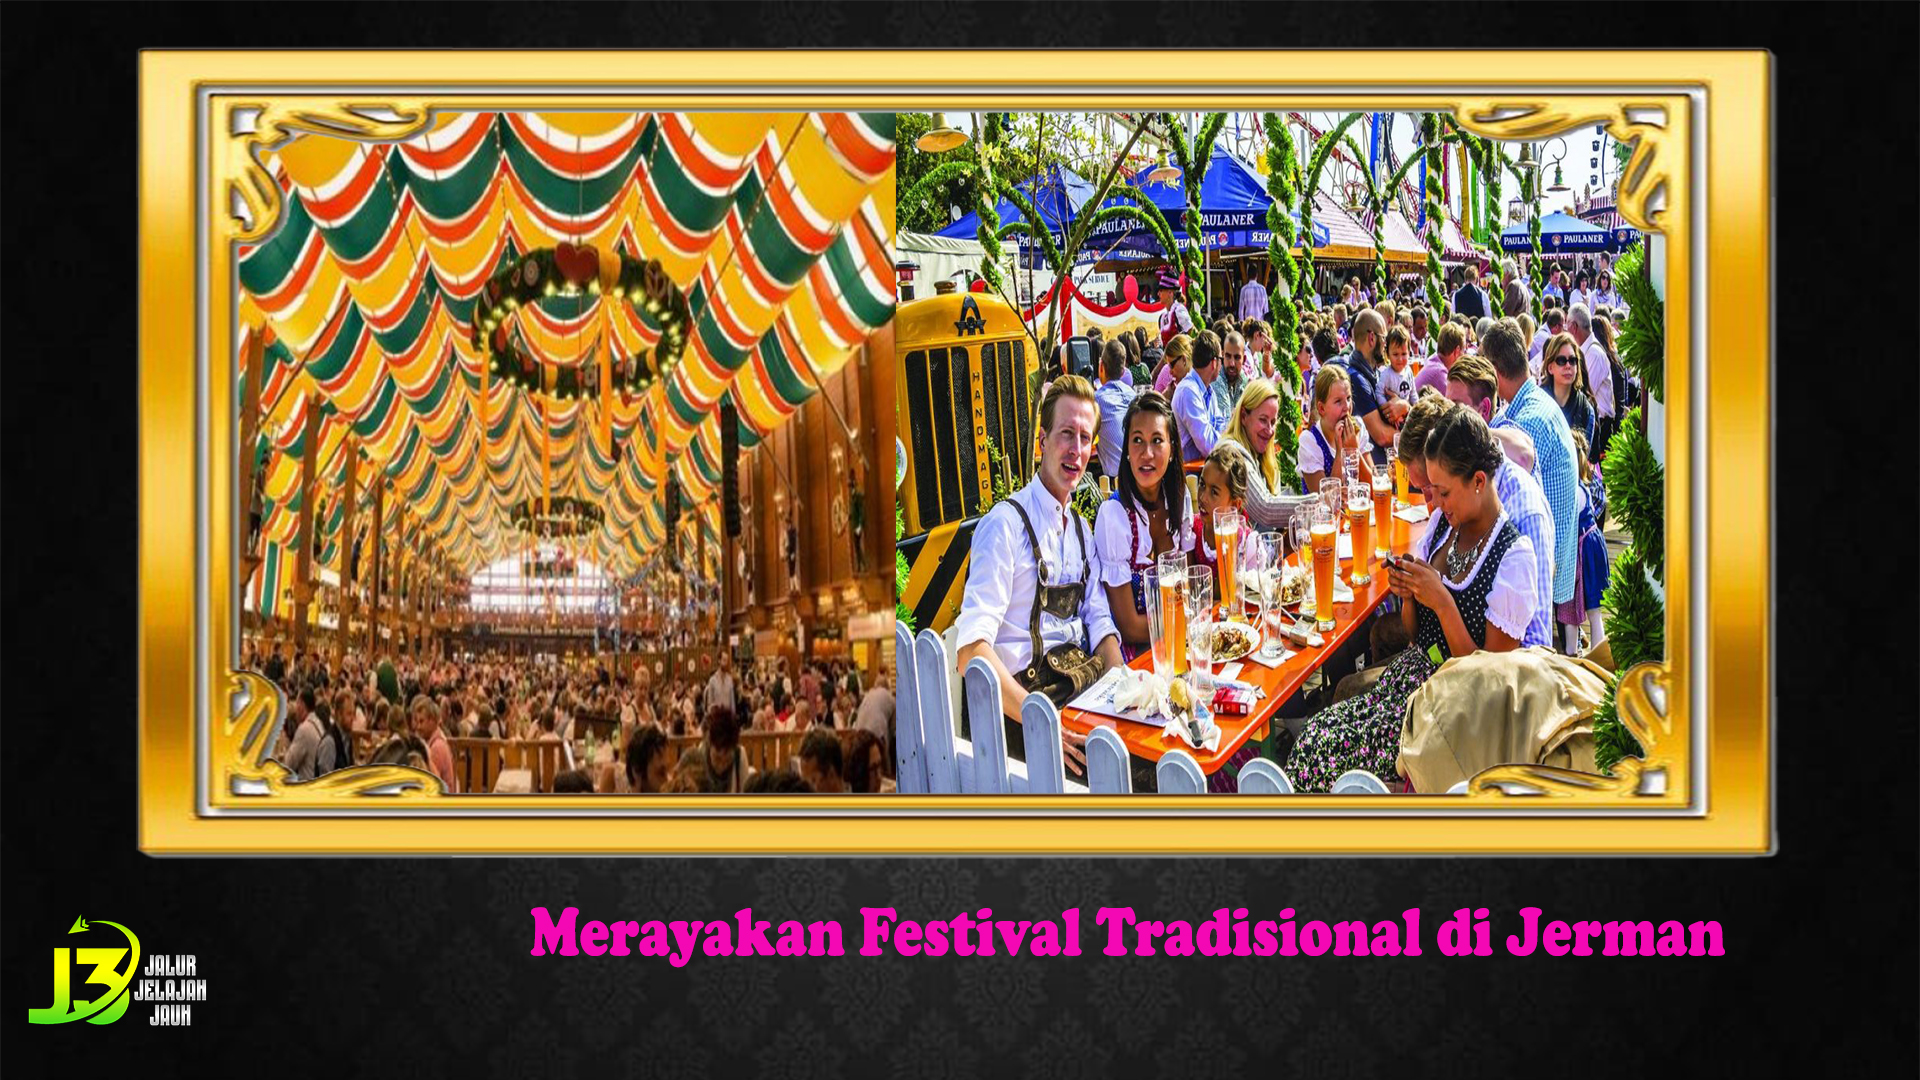 Merayakan Festival Tradisional di Jerman